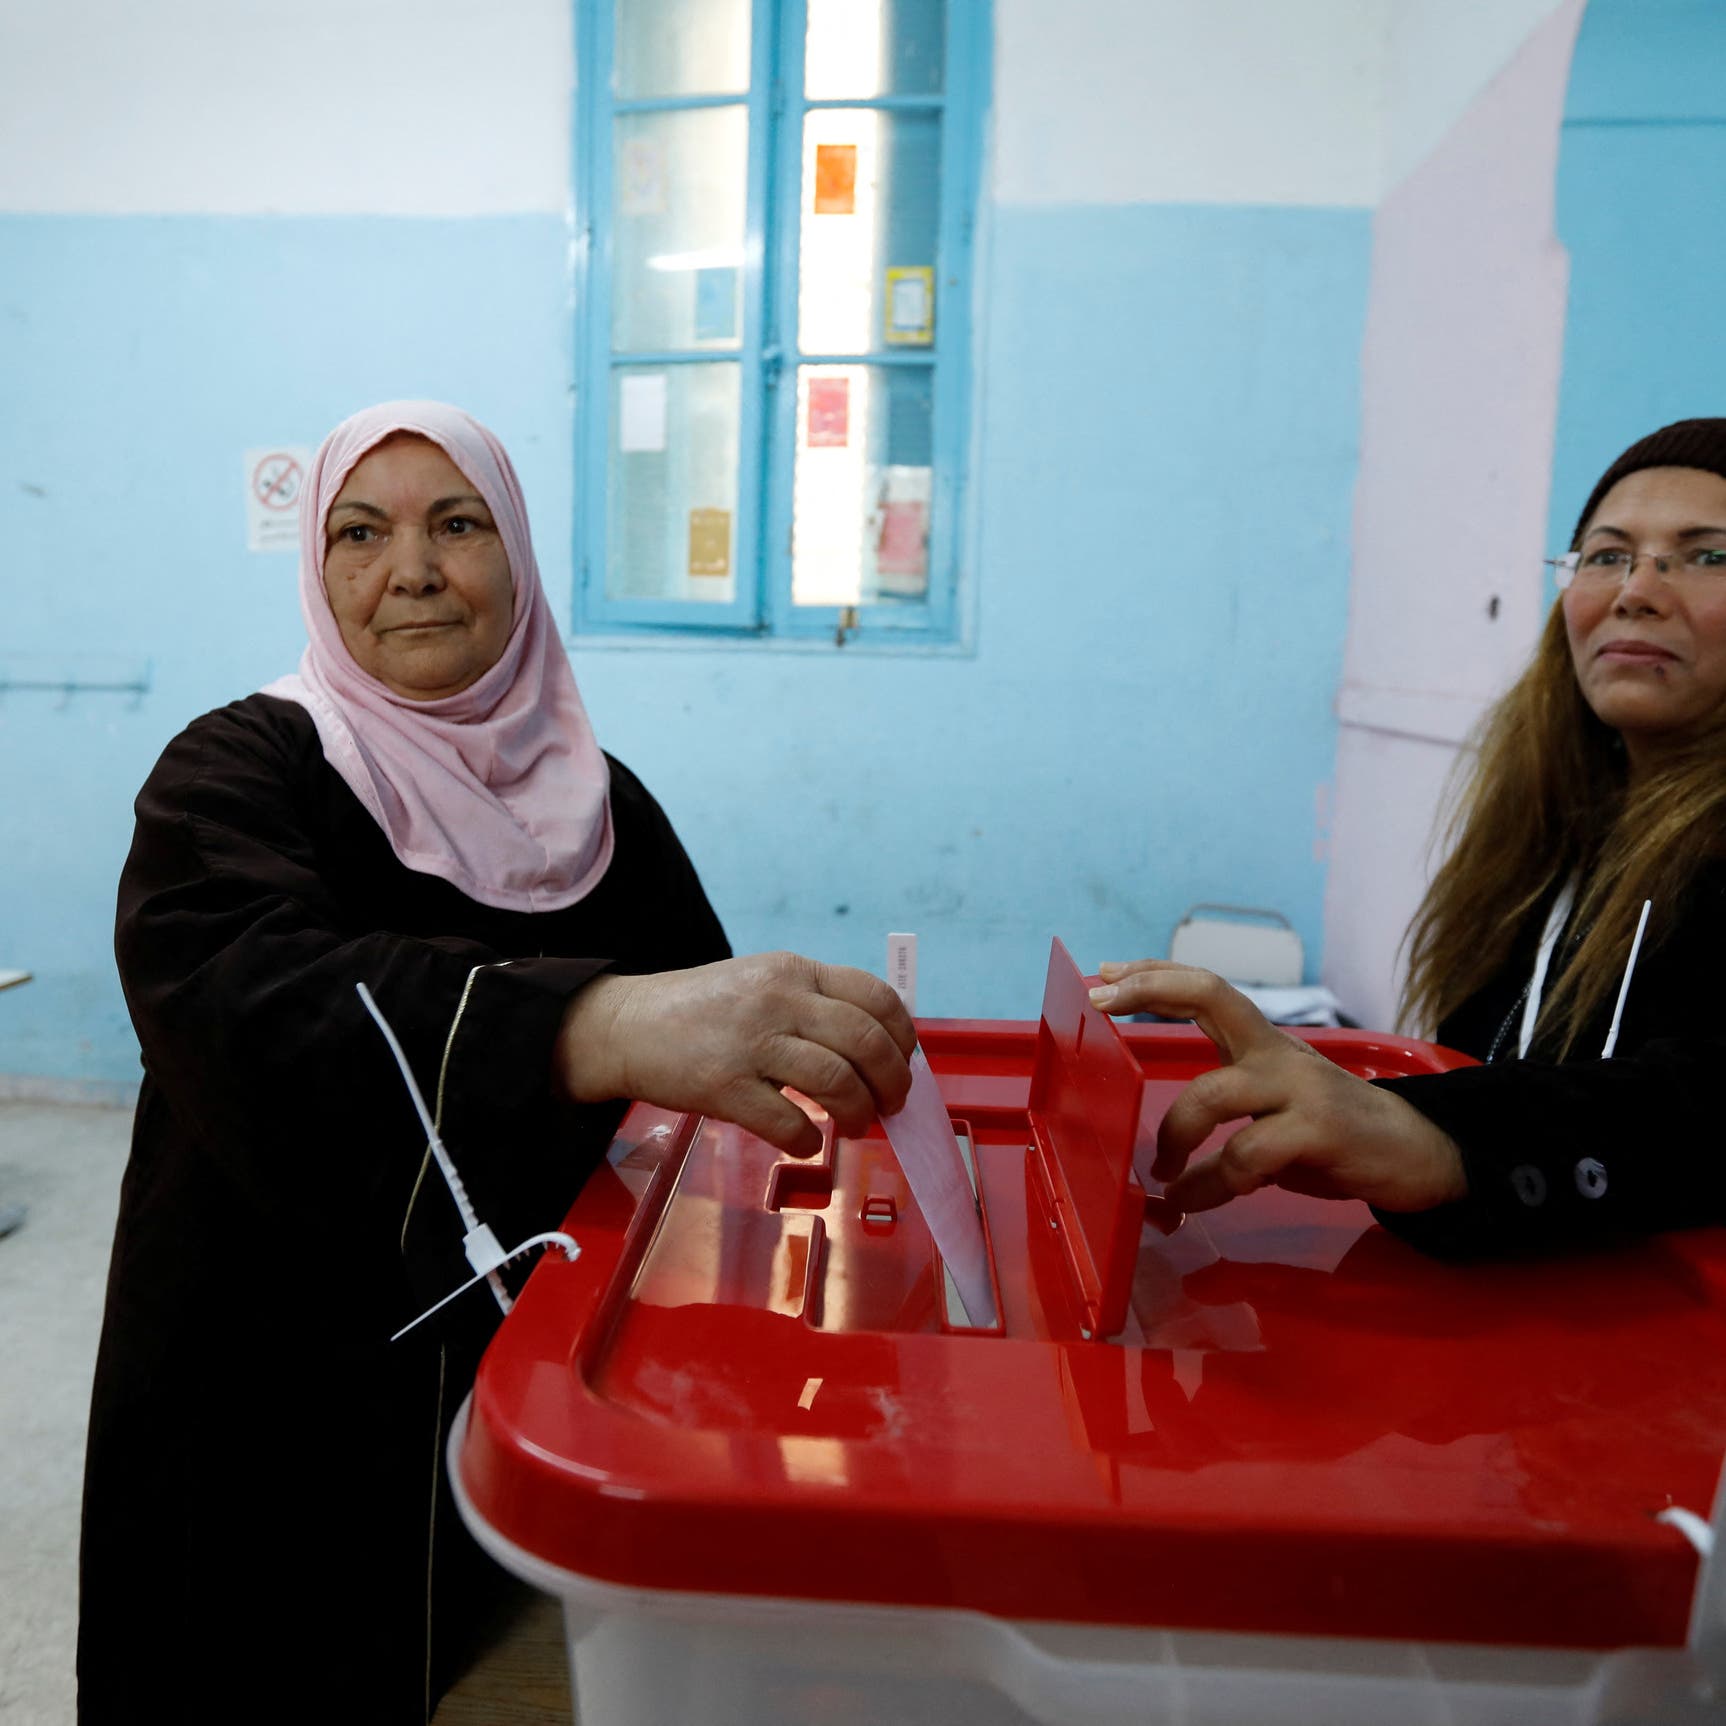 التونسيون يصوتون لانتخاب برلمان.. وسعيد: لا تفوتوا الفرصة